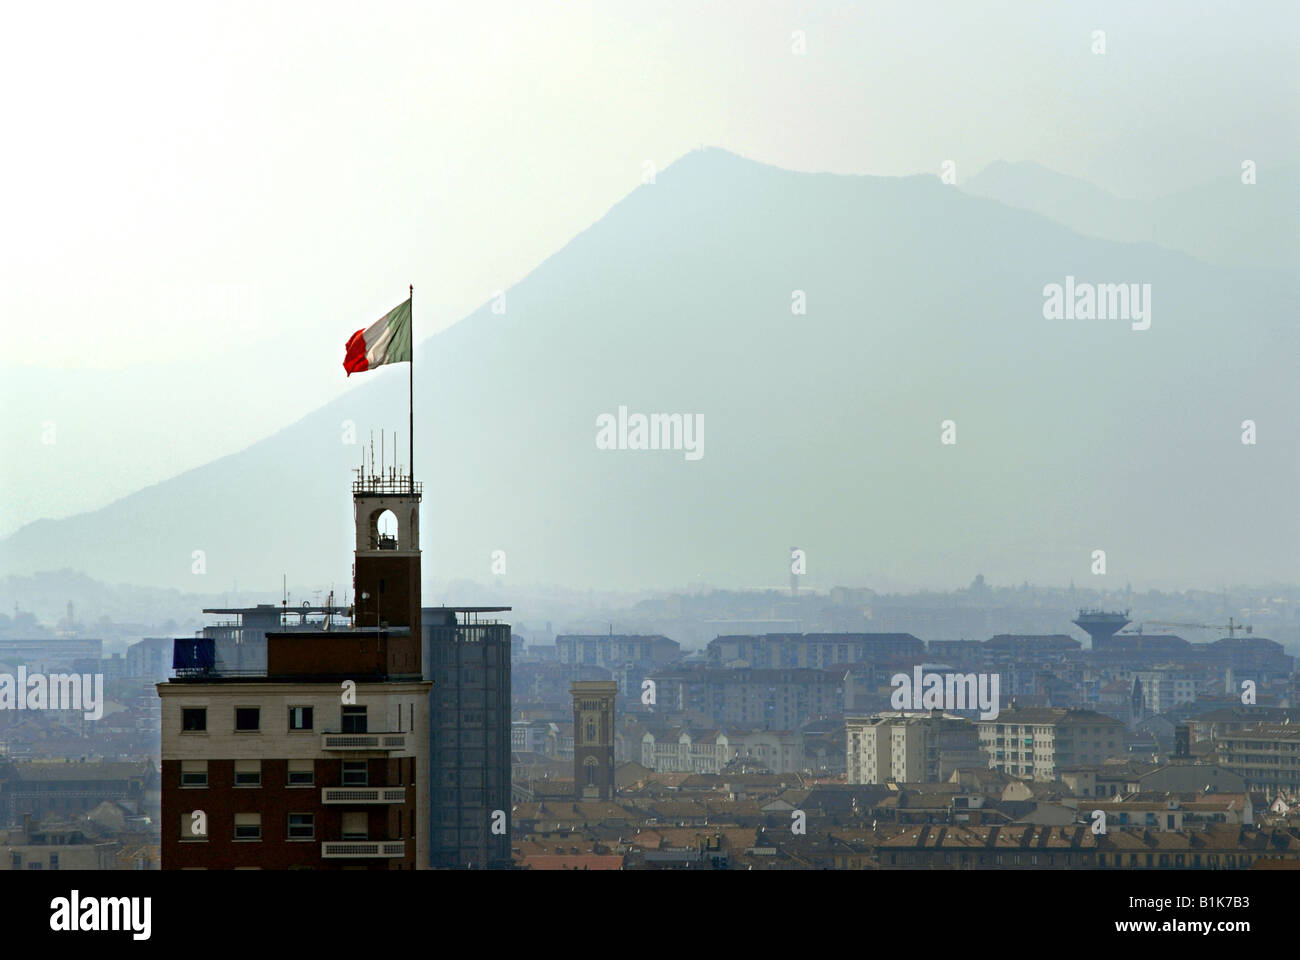 La bandiera italiana, il Tricolore, vola sulla cima di uno degli edifici più alti di Torino, Piemonte, Italia. Foto Stock